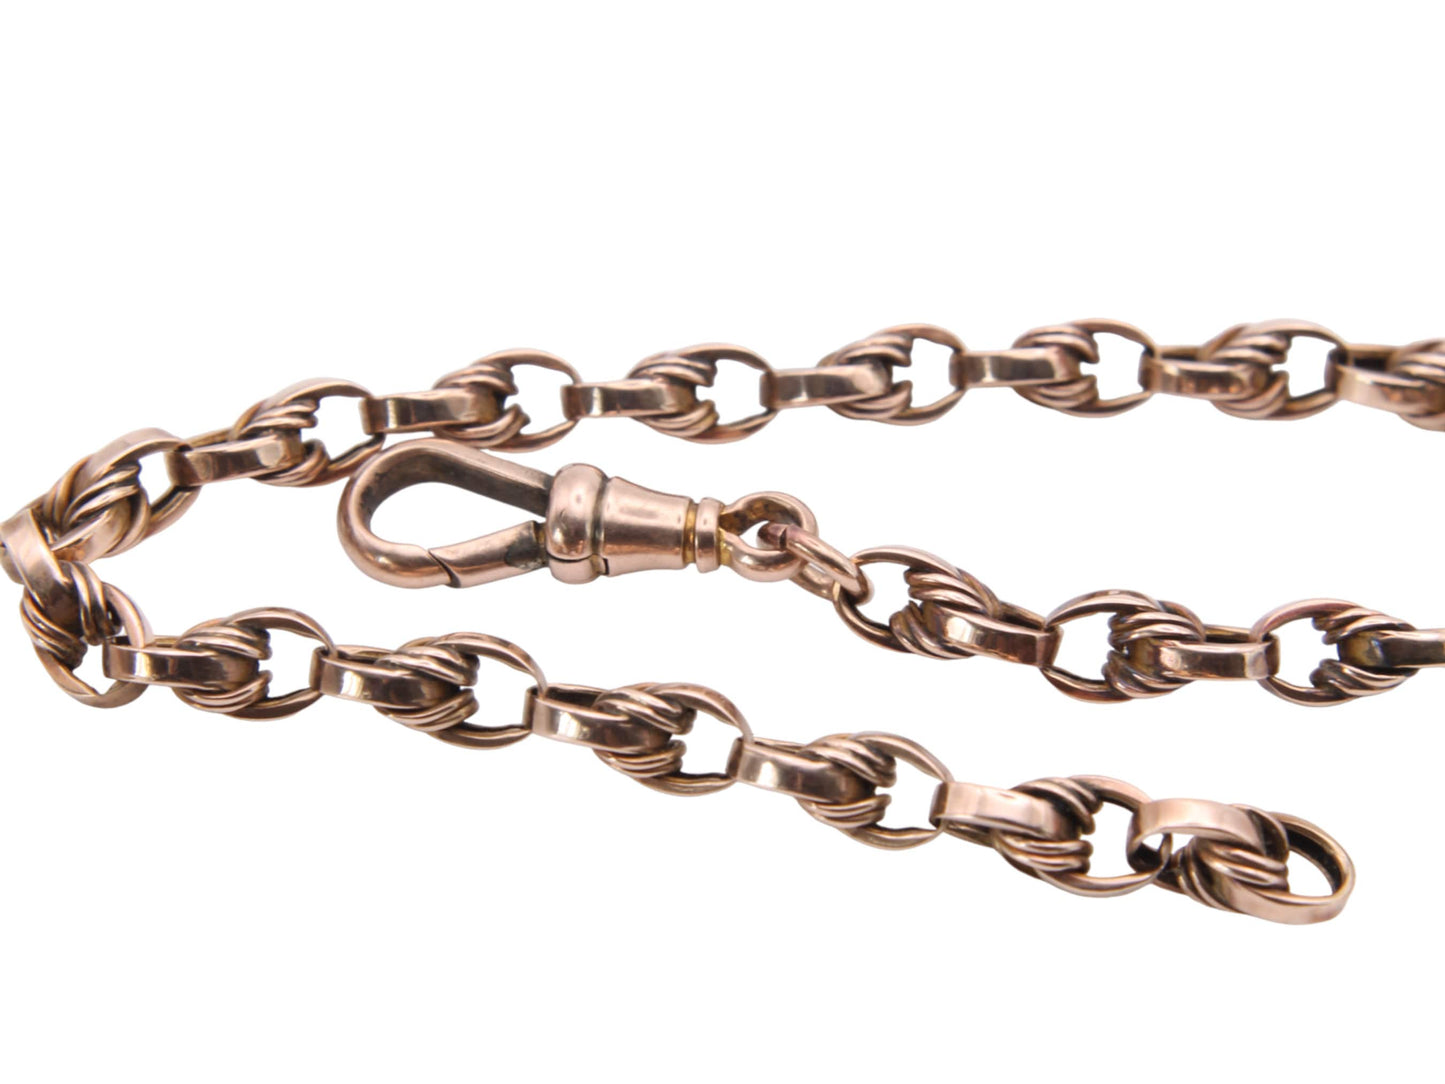 Antique 9ct Gold Lovers Knot Link Bracelet